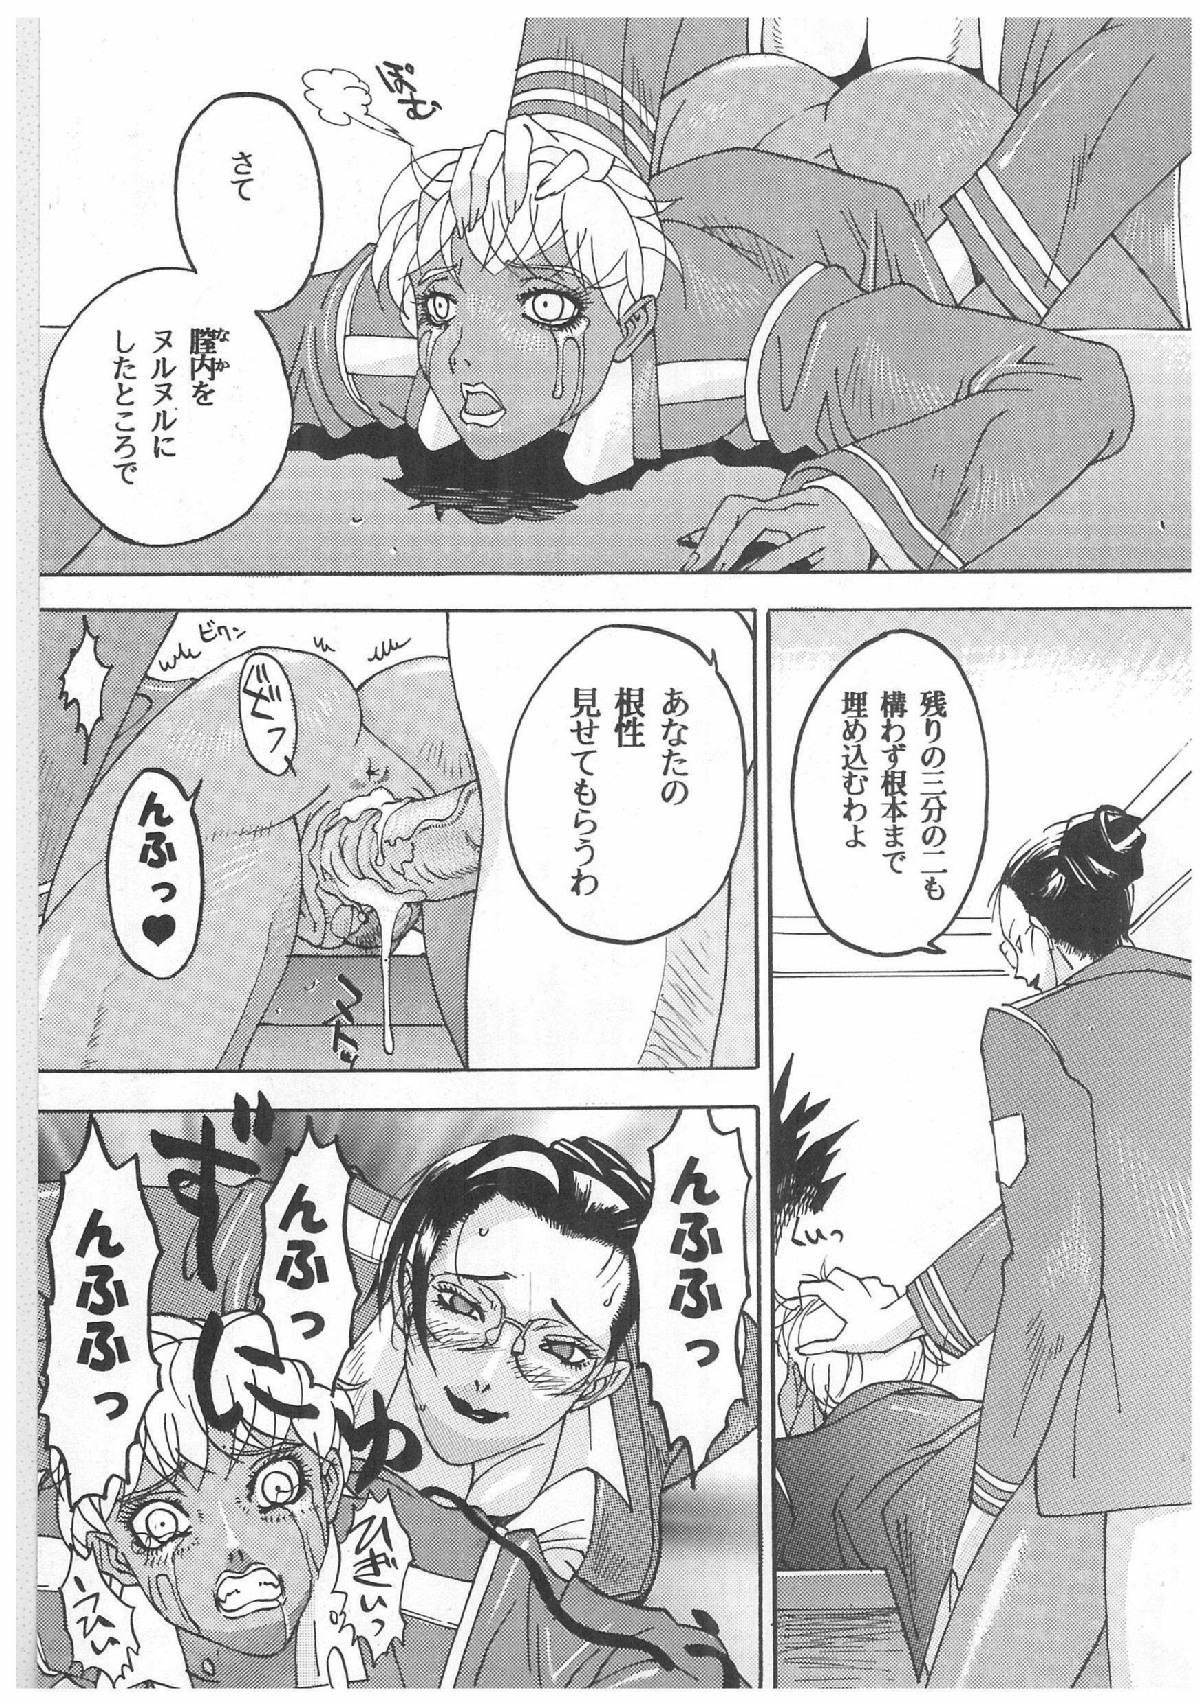 Fun Spermatank Anime - Page 10